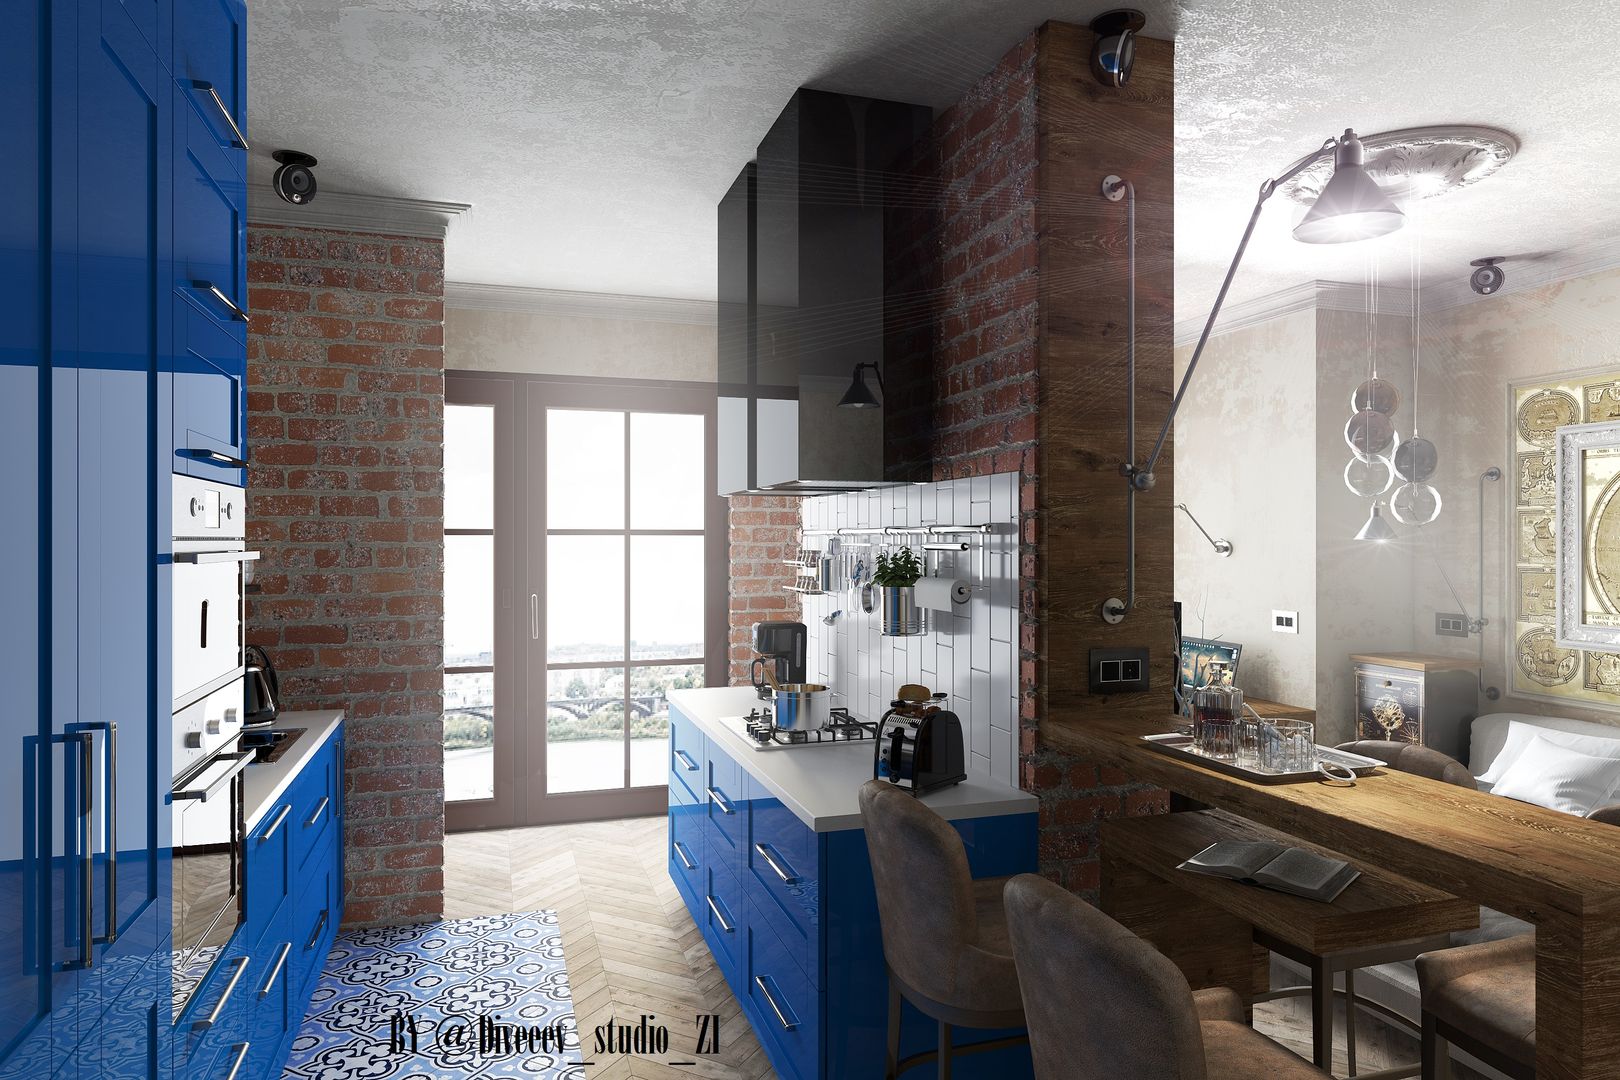 Квартира студия, Diveev_studio#ZI Diveev_studio#ZI Cocinas de estilo industrial